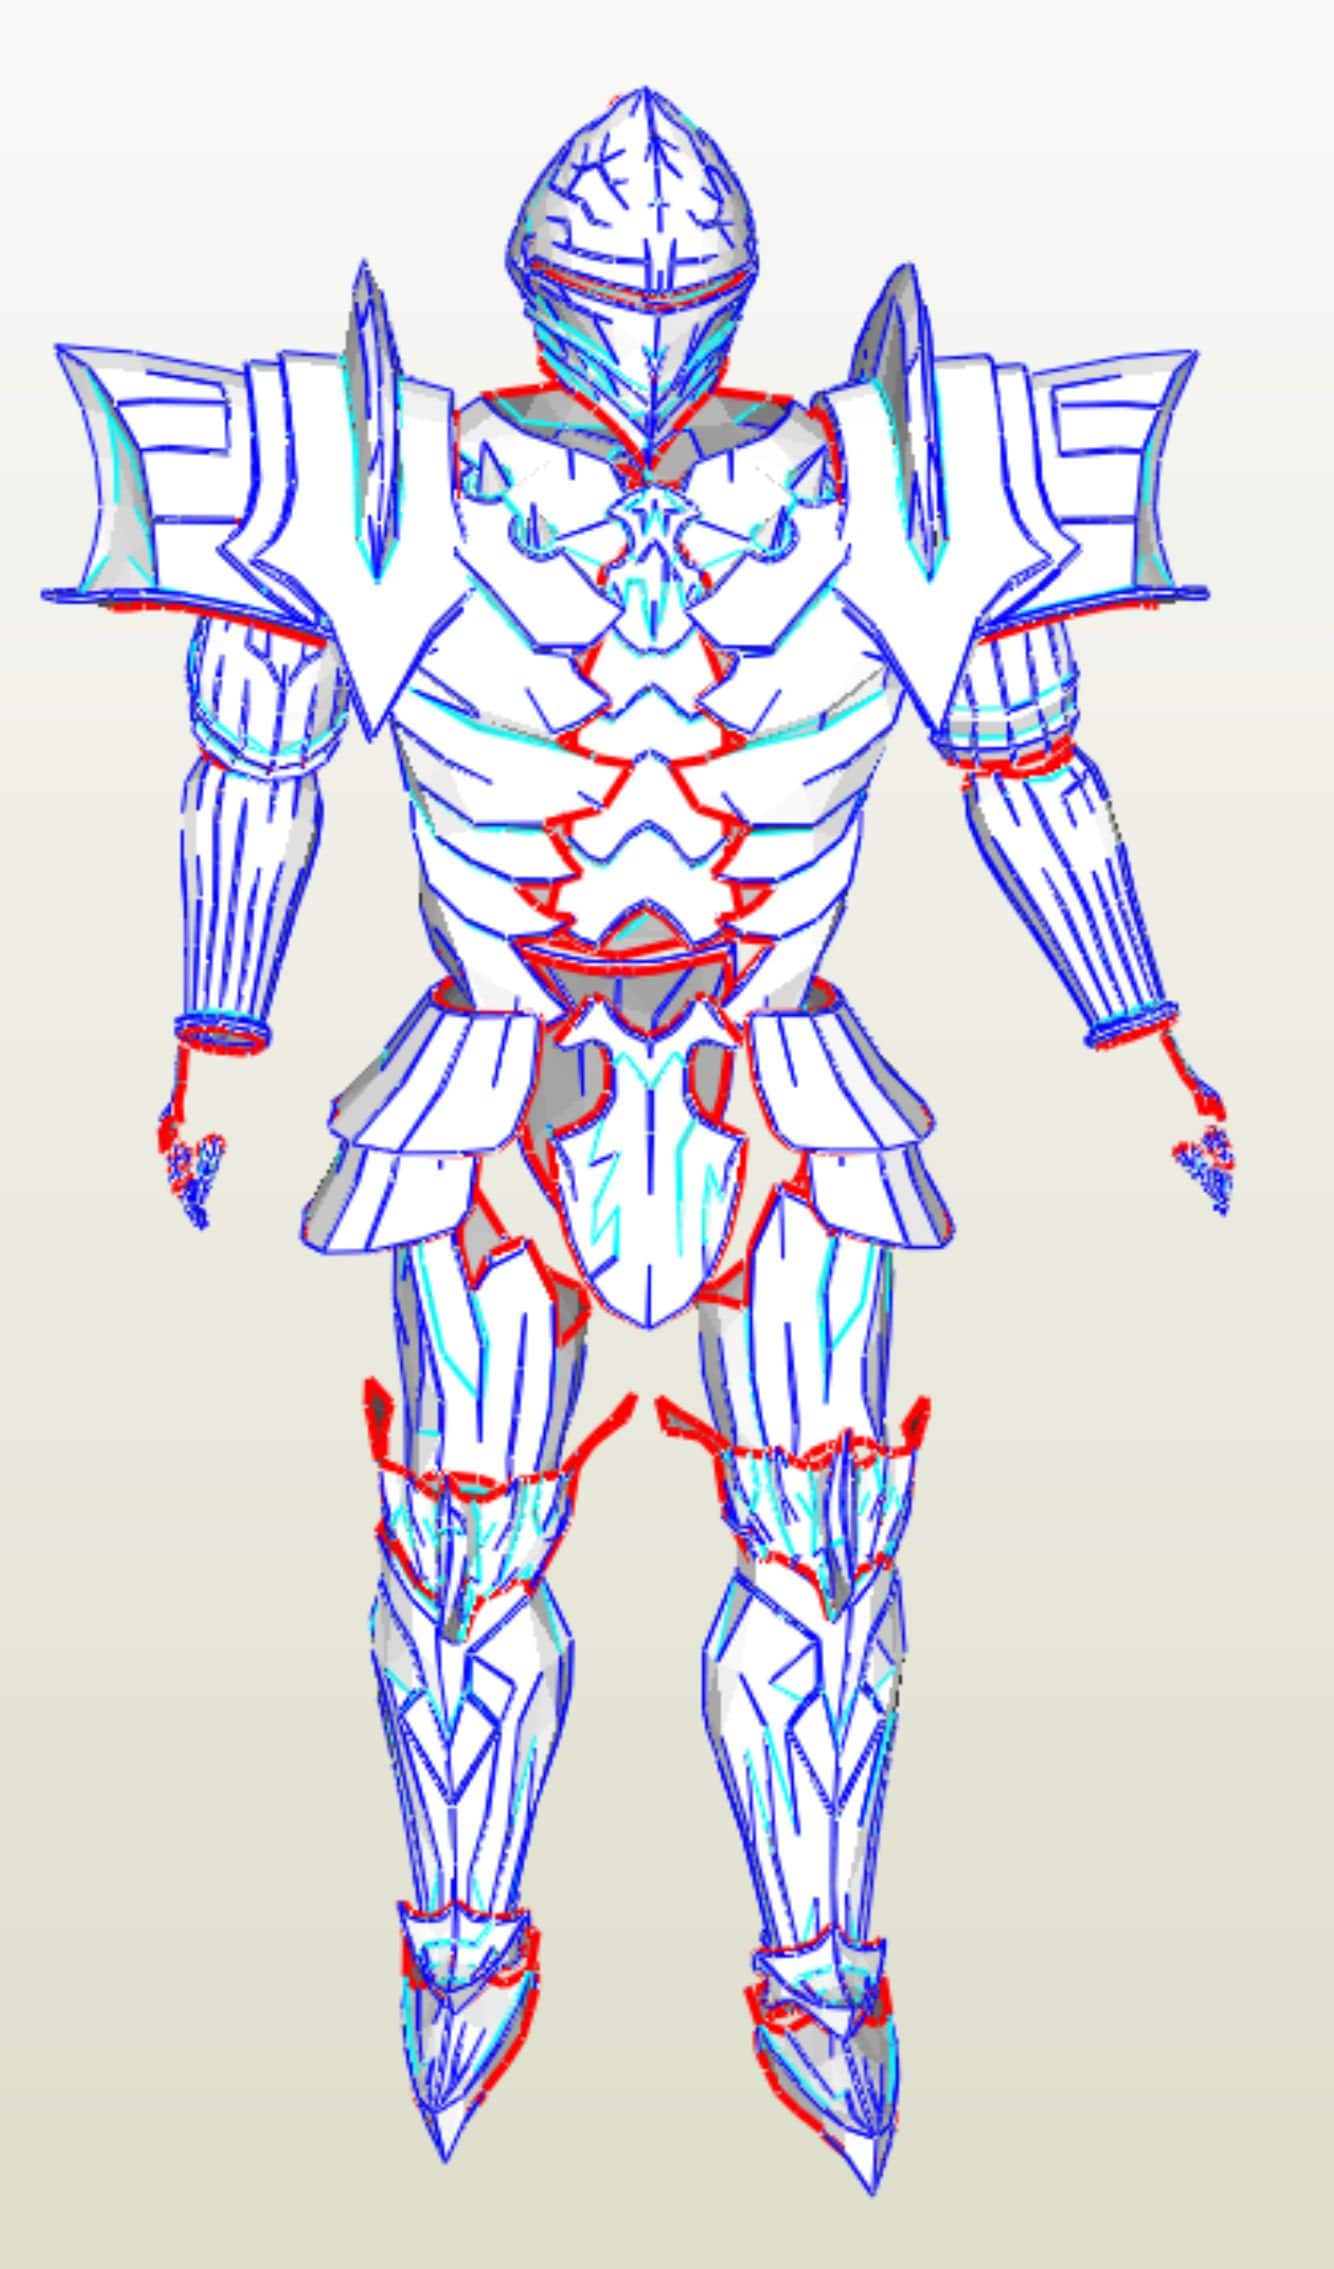 Berserker armor suit cosplay pepakura paper templates -  Portugal